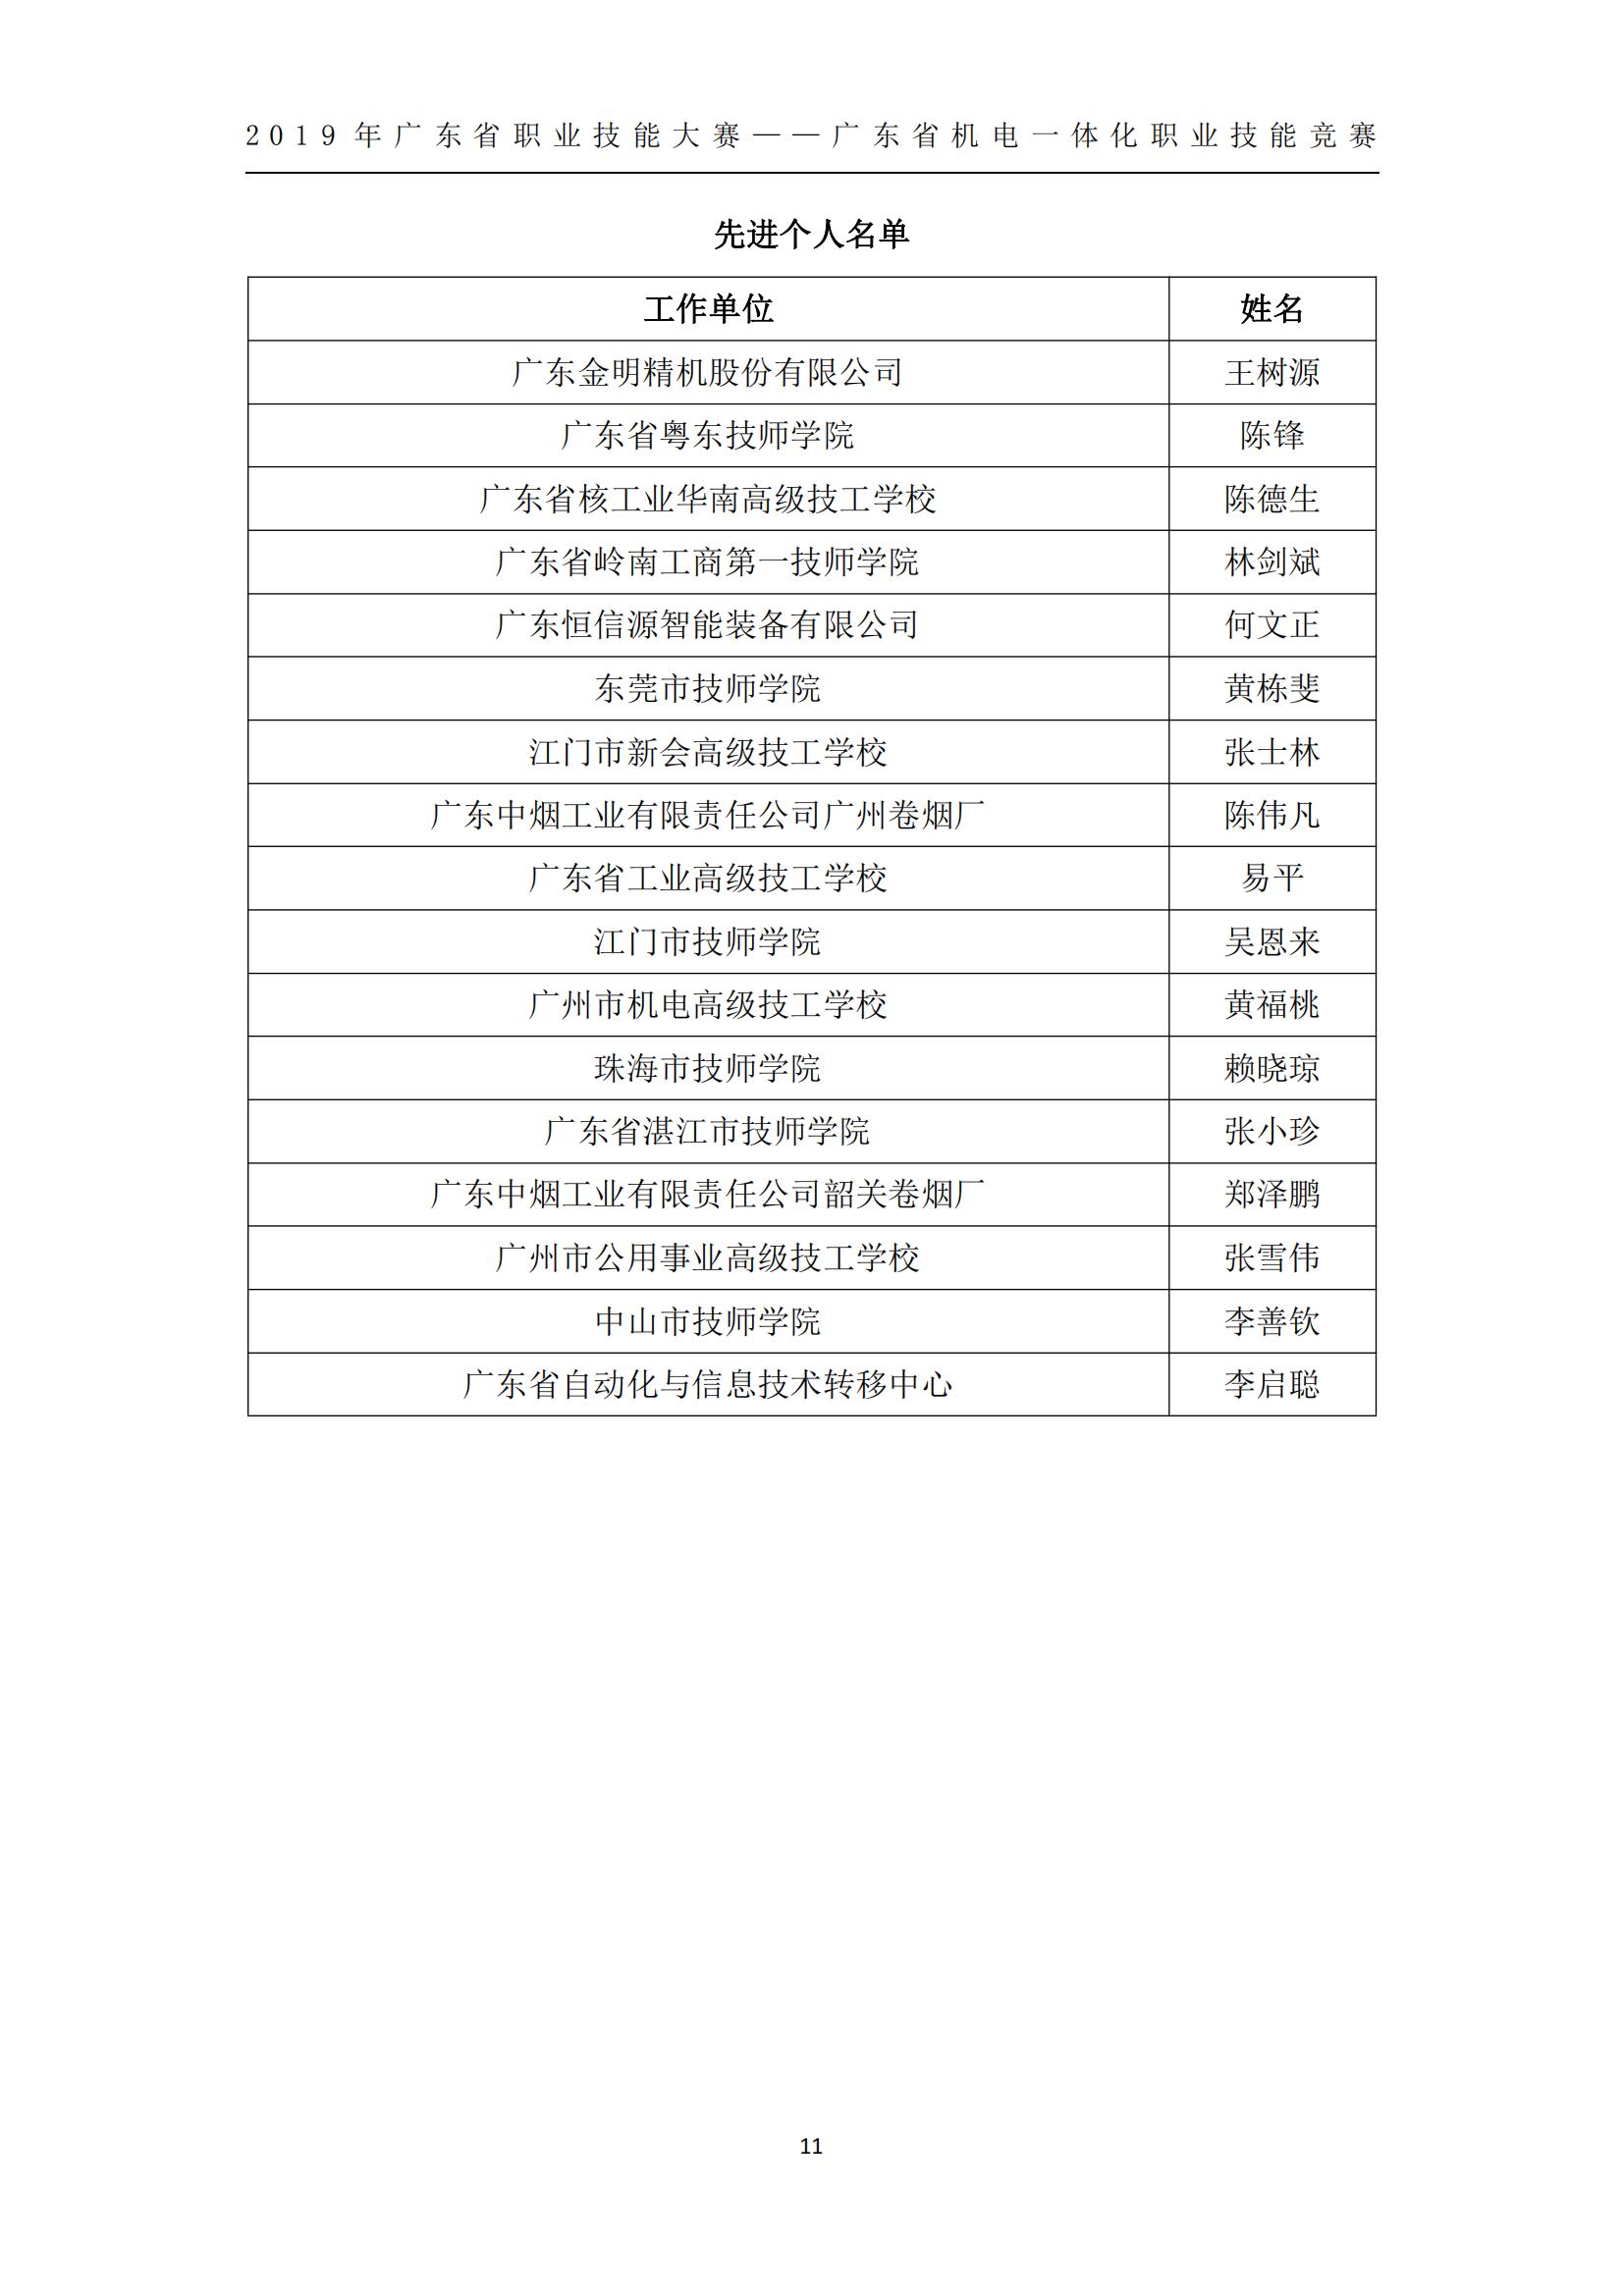 2019 年广东省职业技能大赛——广东省机电一体化职业技能竞赛获奖人员和单位公布_10.jpg